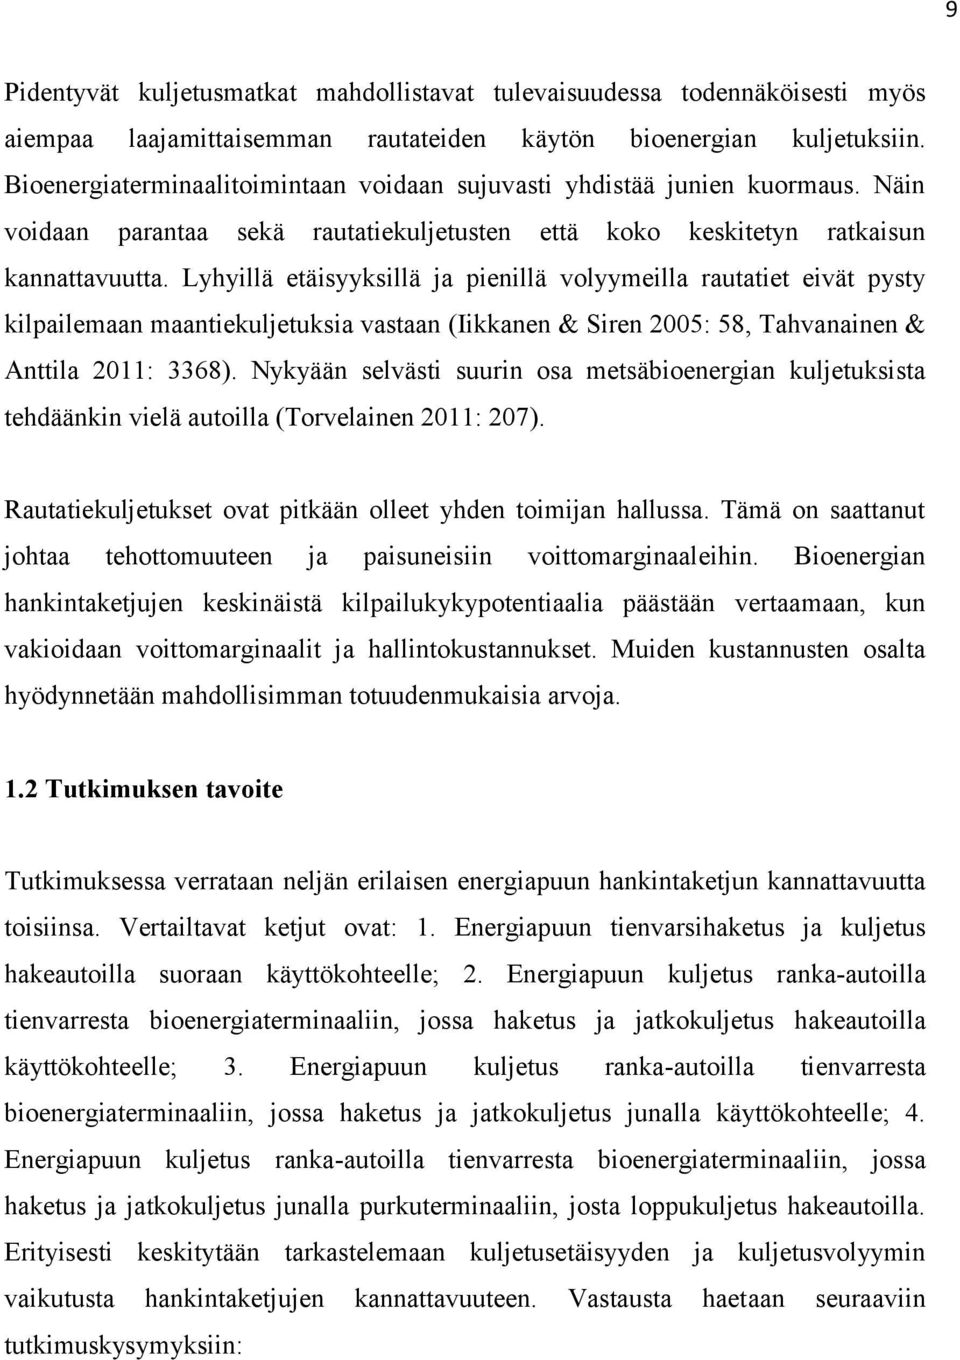 Lyhyillä etäisyyksillä ja pienillä volyymeilla rautatiet eivät pysty kilpailemaan maantiekuljetuksia vastaan (Iikkanen & Siren 2005: 58, Tahvanainen & Anttila 2011: 3368).